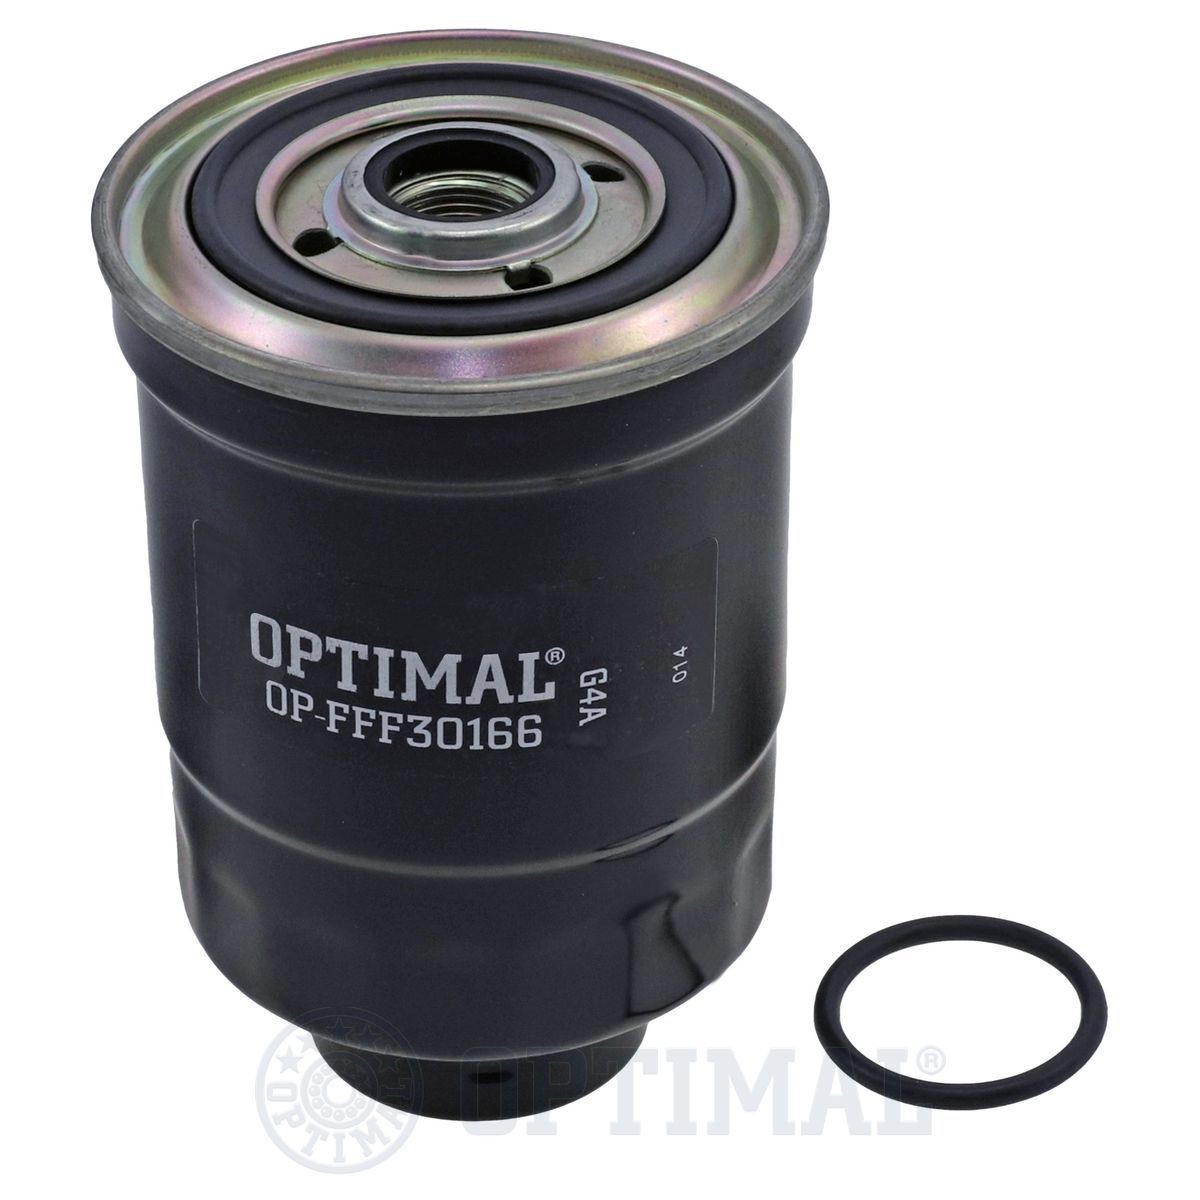 OPTIMAL OP-FFF30166 Fuel filter 818642